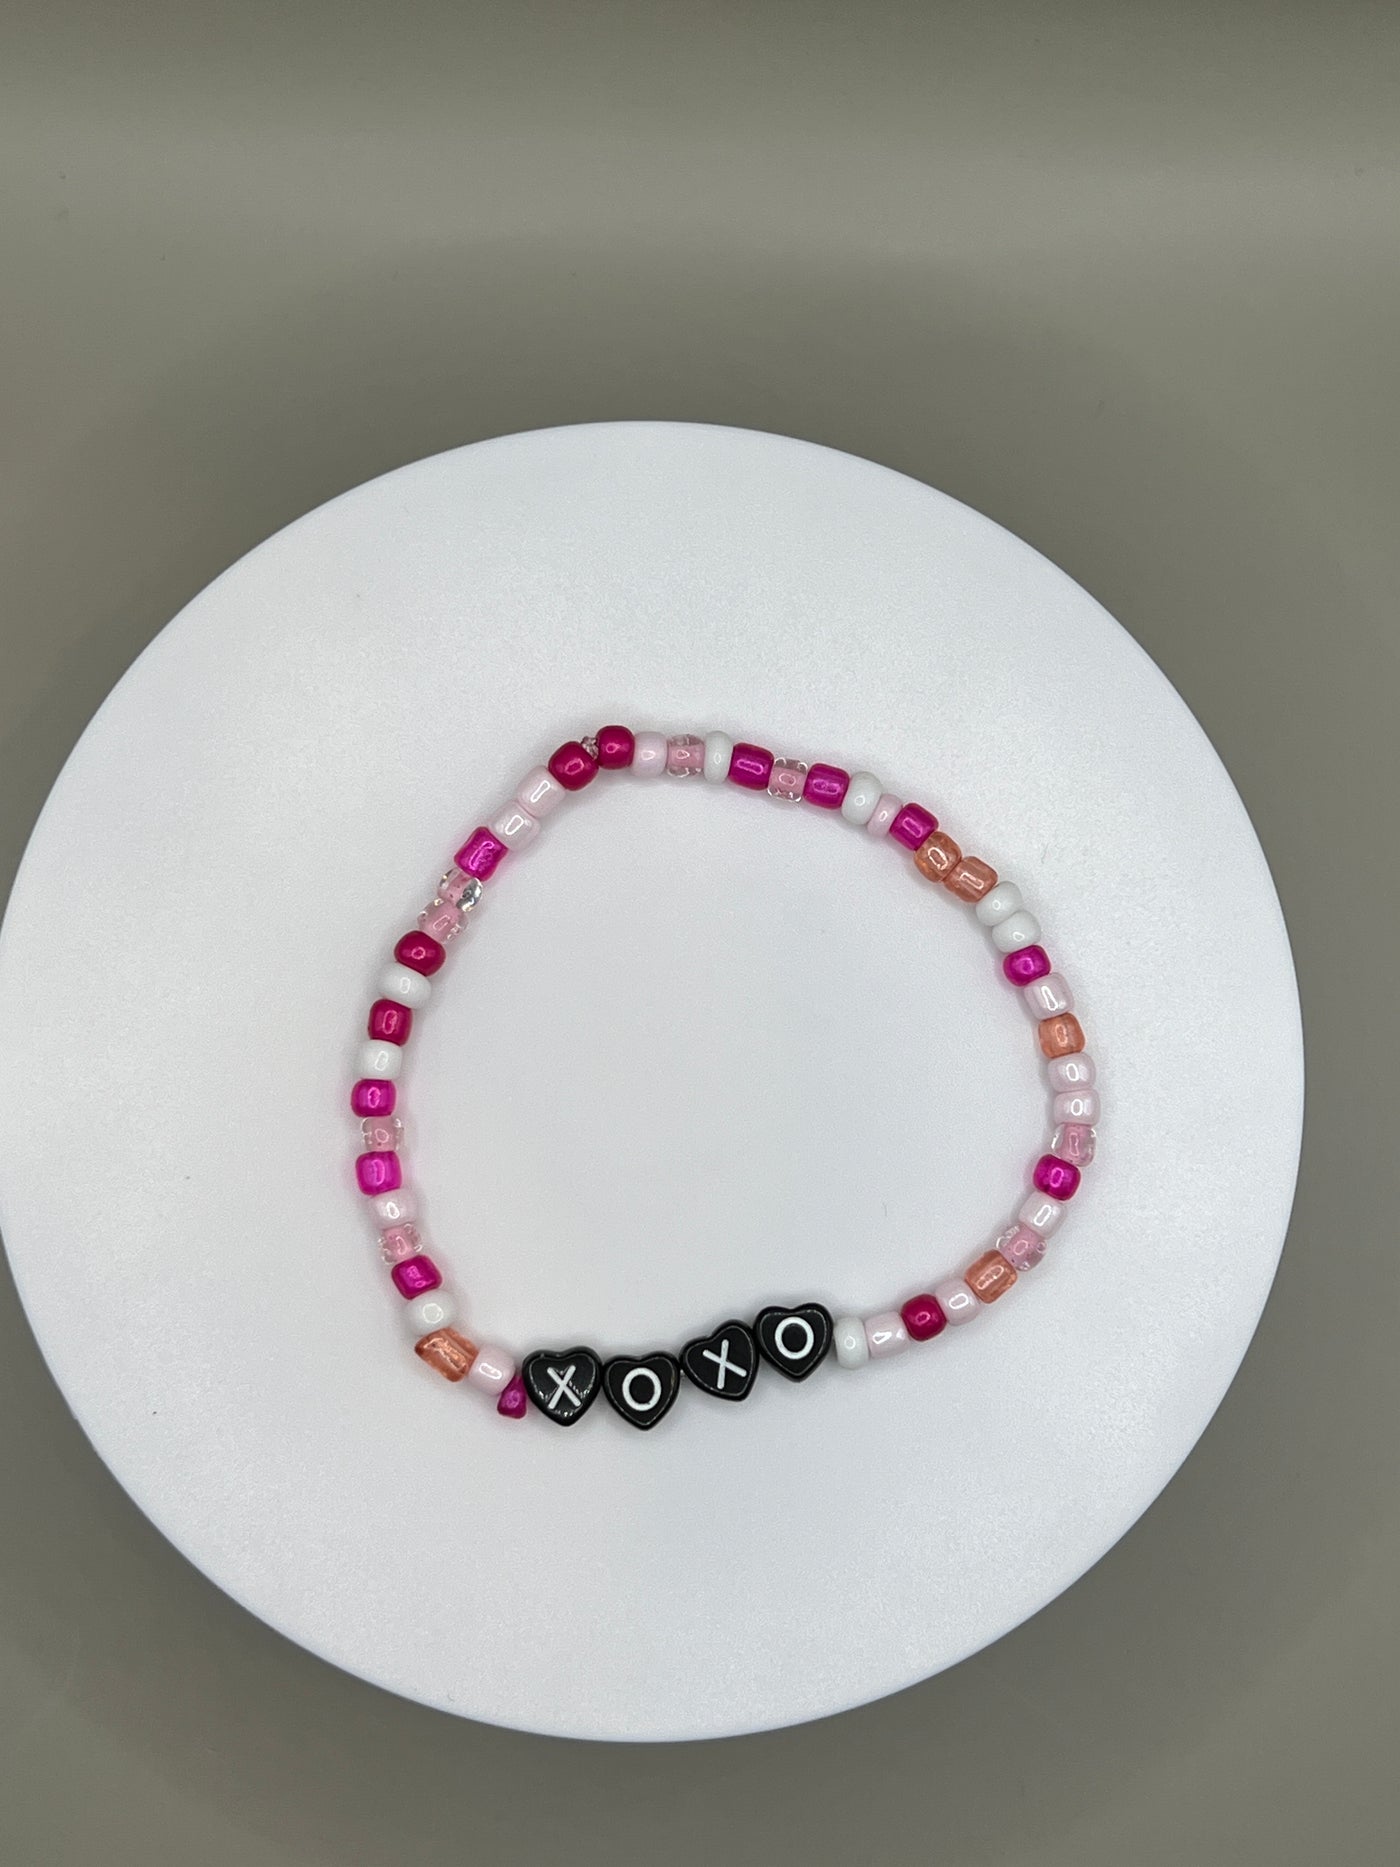 XOXO Valentine Bracelet - Pink/White/Glitter Stretch